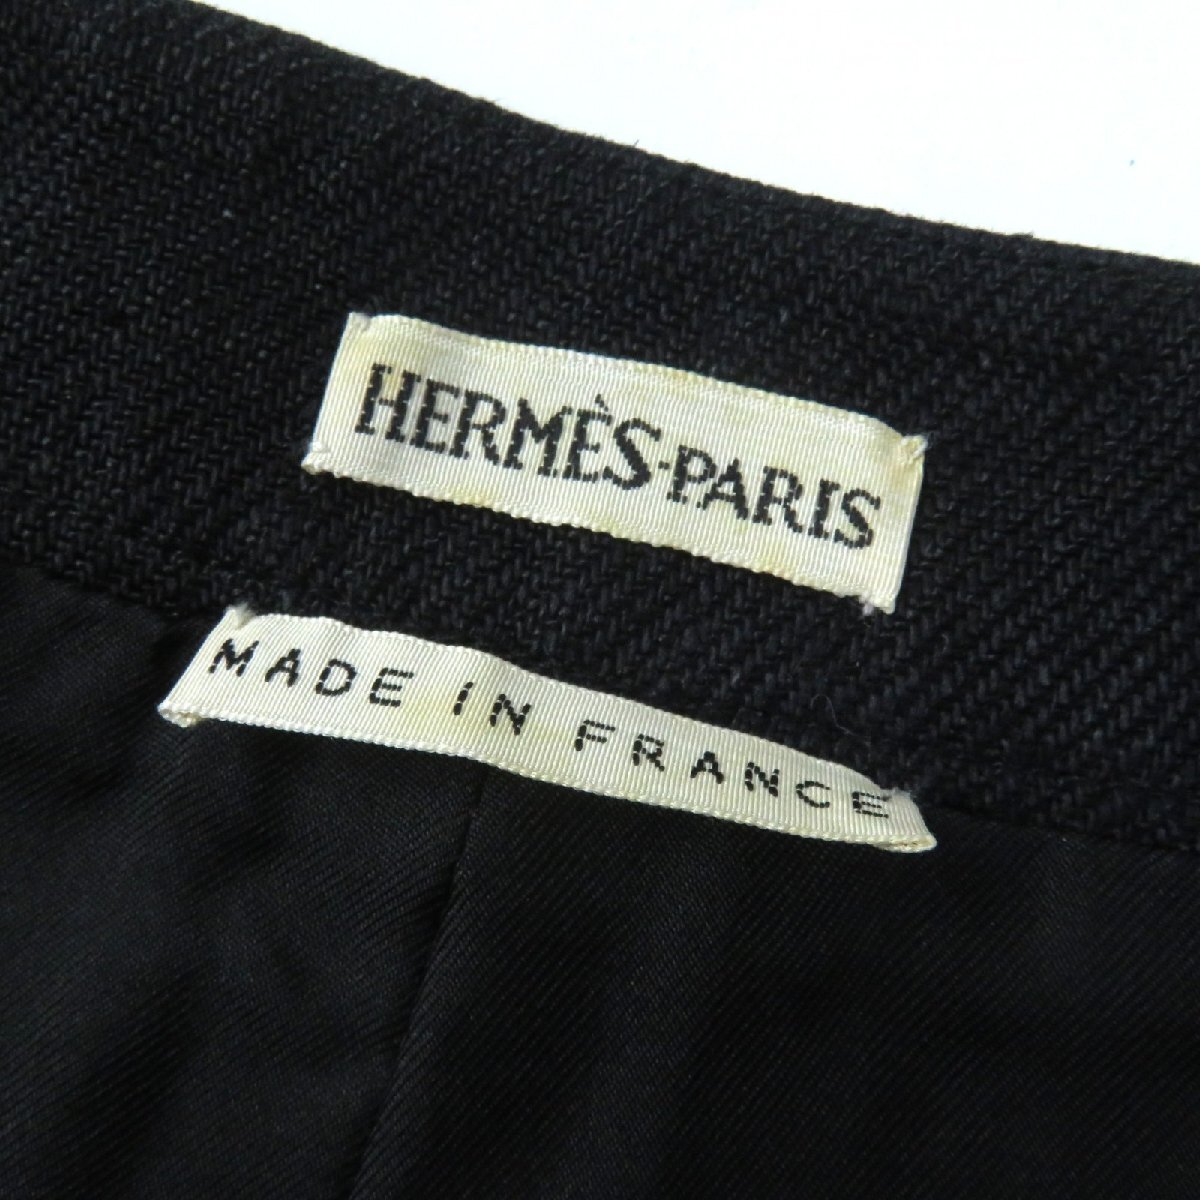  прекрасный товар *HERMES Hermes linen100% подкладка шелк 100% H кнопка есть длинная юбка черный 36 Франция производства стандартный товар женский elegant *